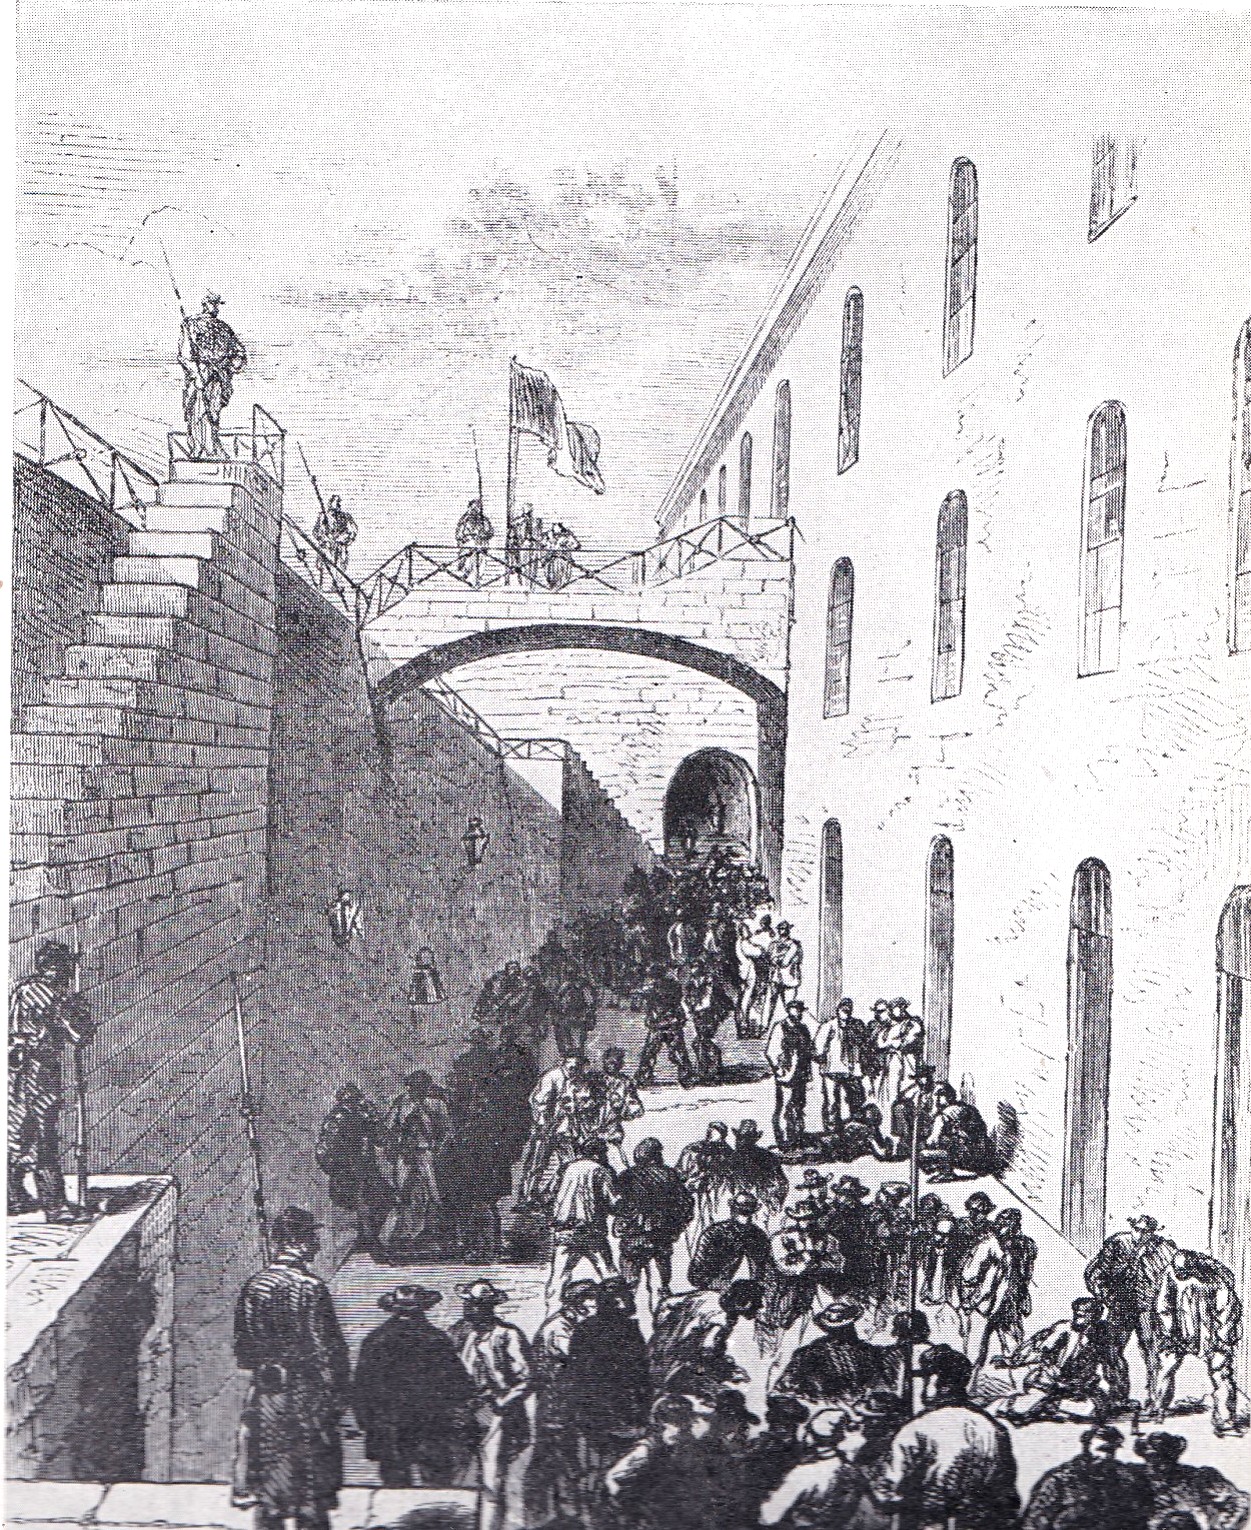 Le fort de l’île Madame : La promenade des prisonniers. Îlot à l’embouchure de la Charente, dont le fort fut utilisé pour recevoir les prisonniers communards en instance de déportation